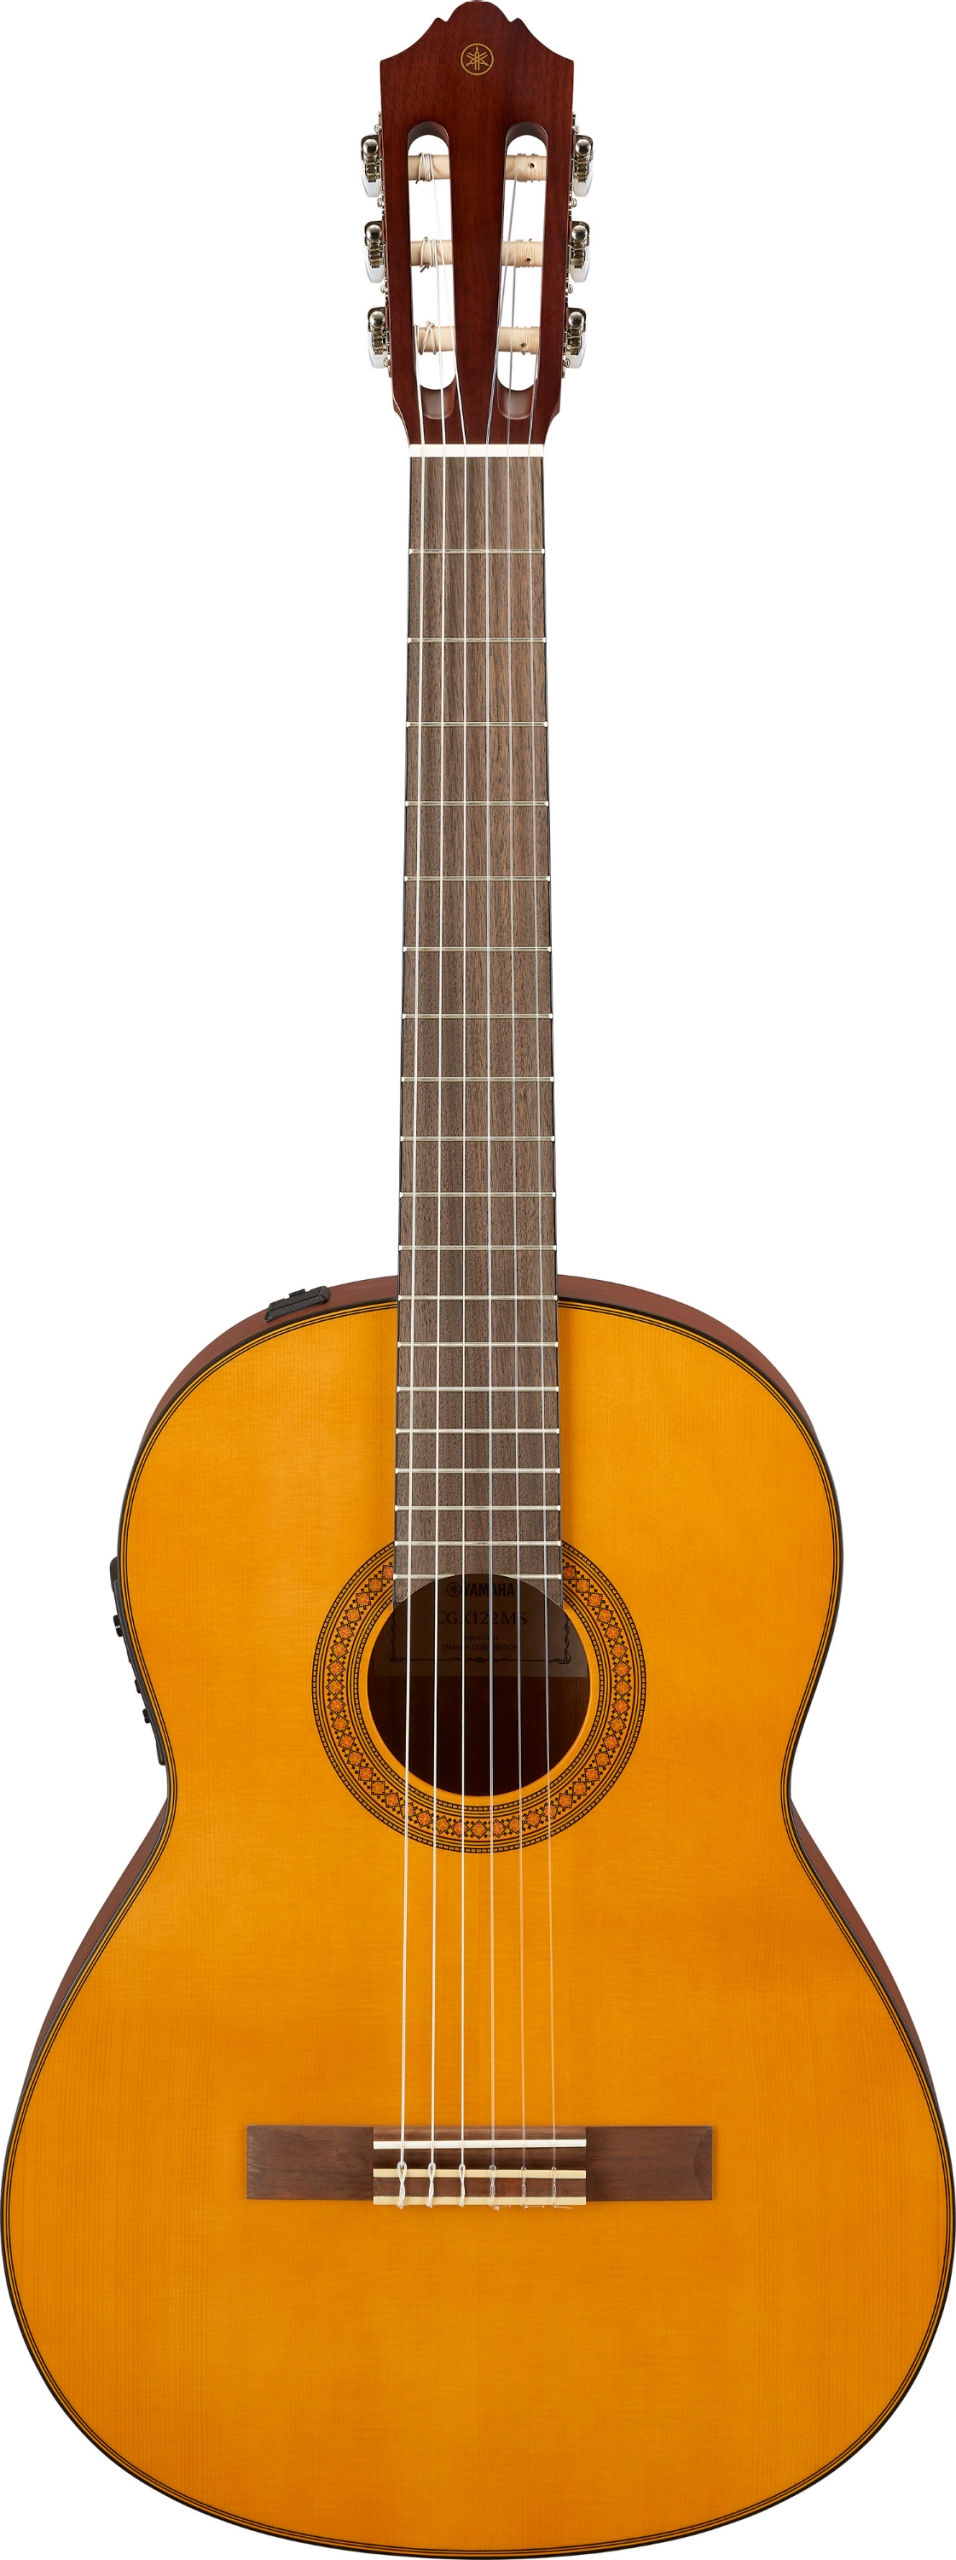 Billede af Yamaha CGX122MS Klassisk Spansk Guitar (Spruce Natural)